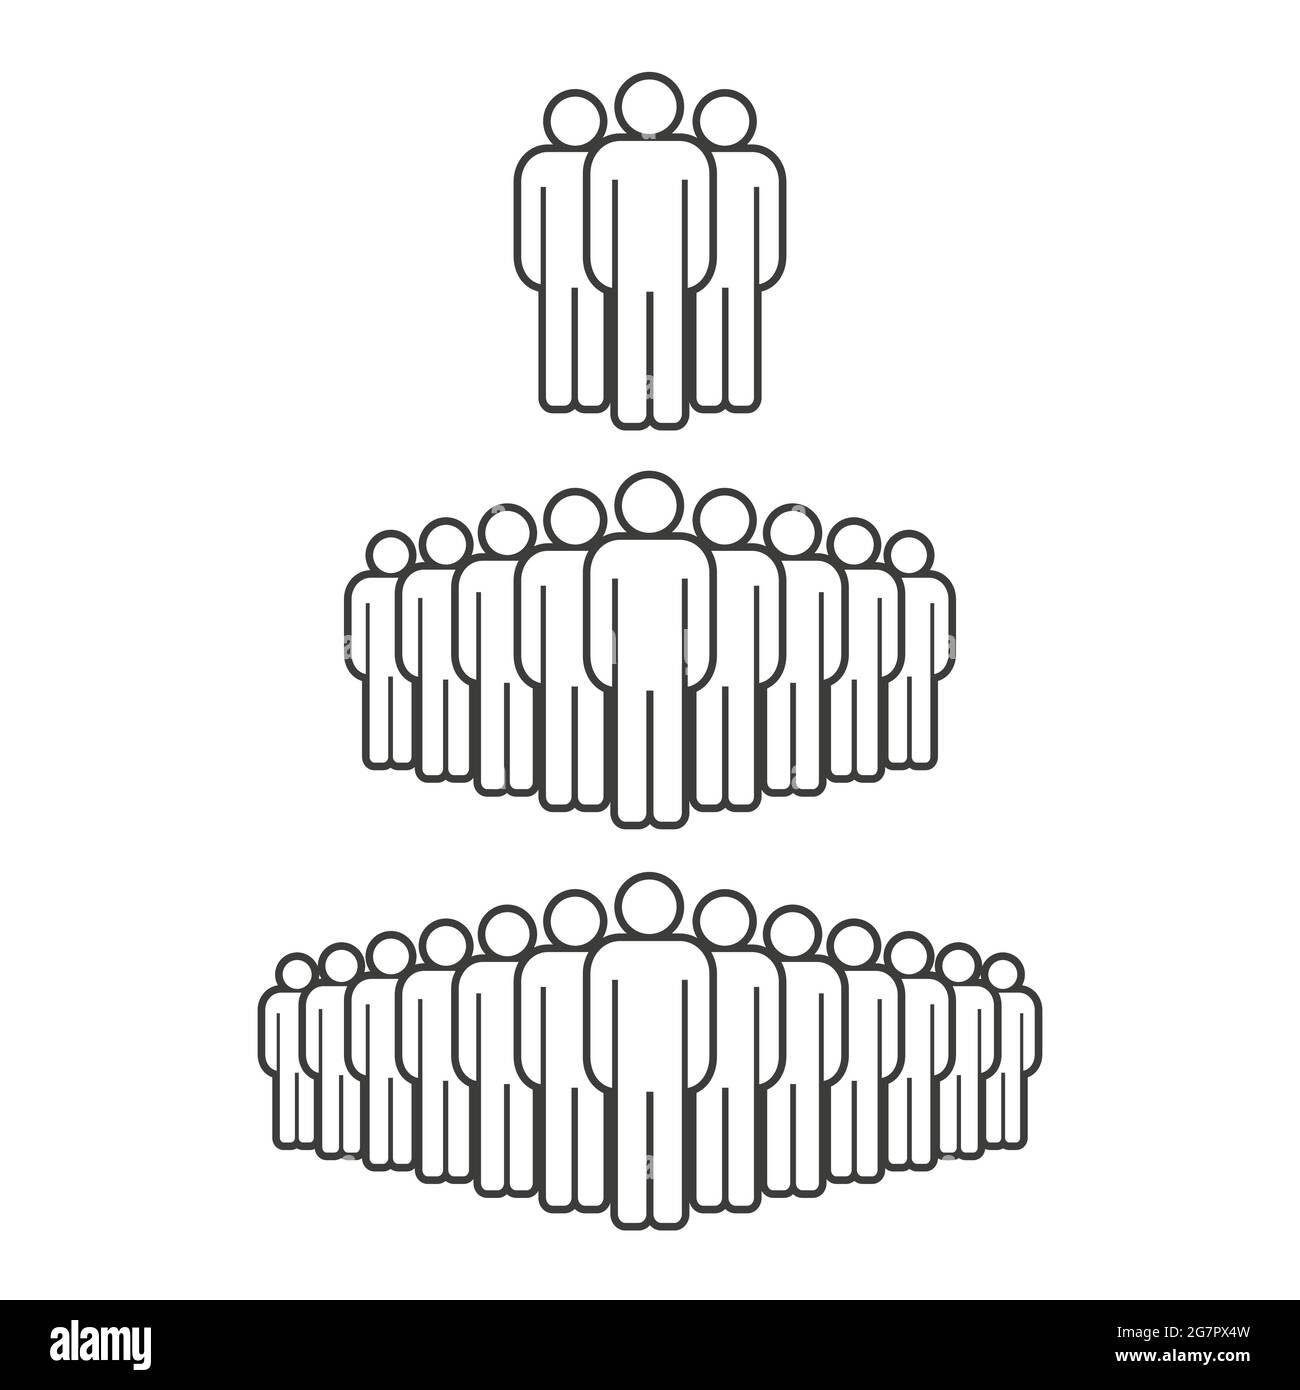 Kleine, mittlere und große Personengruppe. Symbol für die Menschenmenge bei Männern. Personensymbol isoliert. Vektorgrafik. Stock Vektor